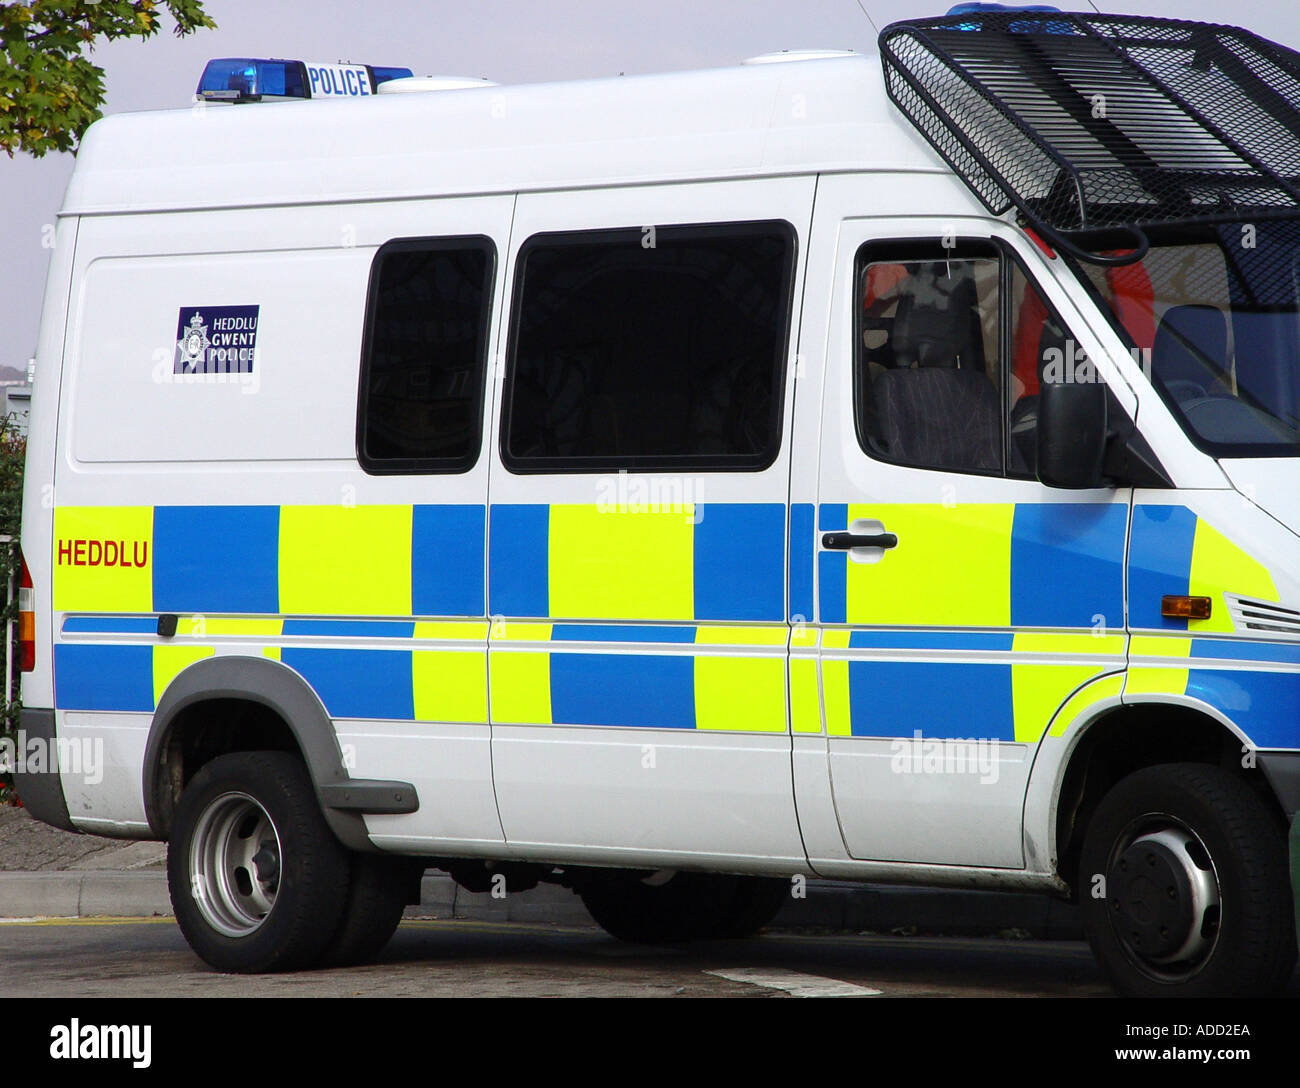 ex police vans for sale uk